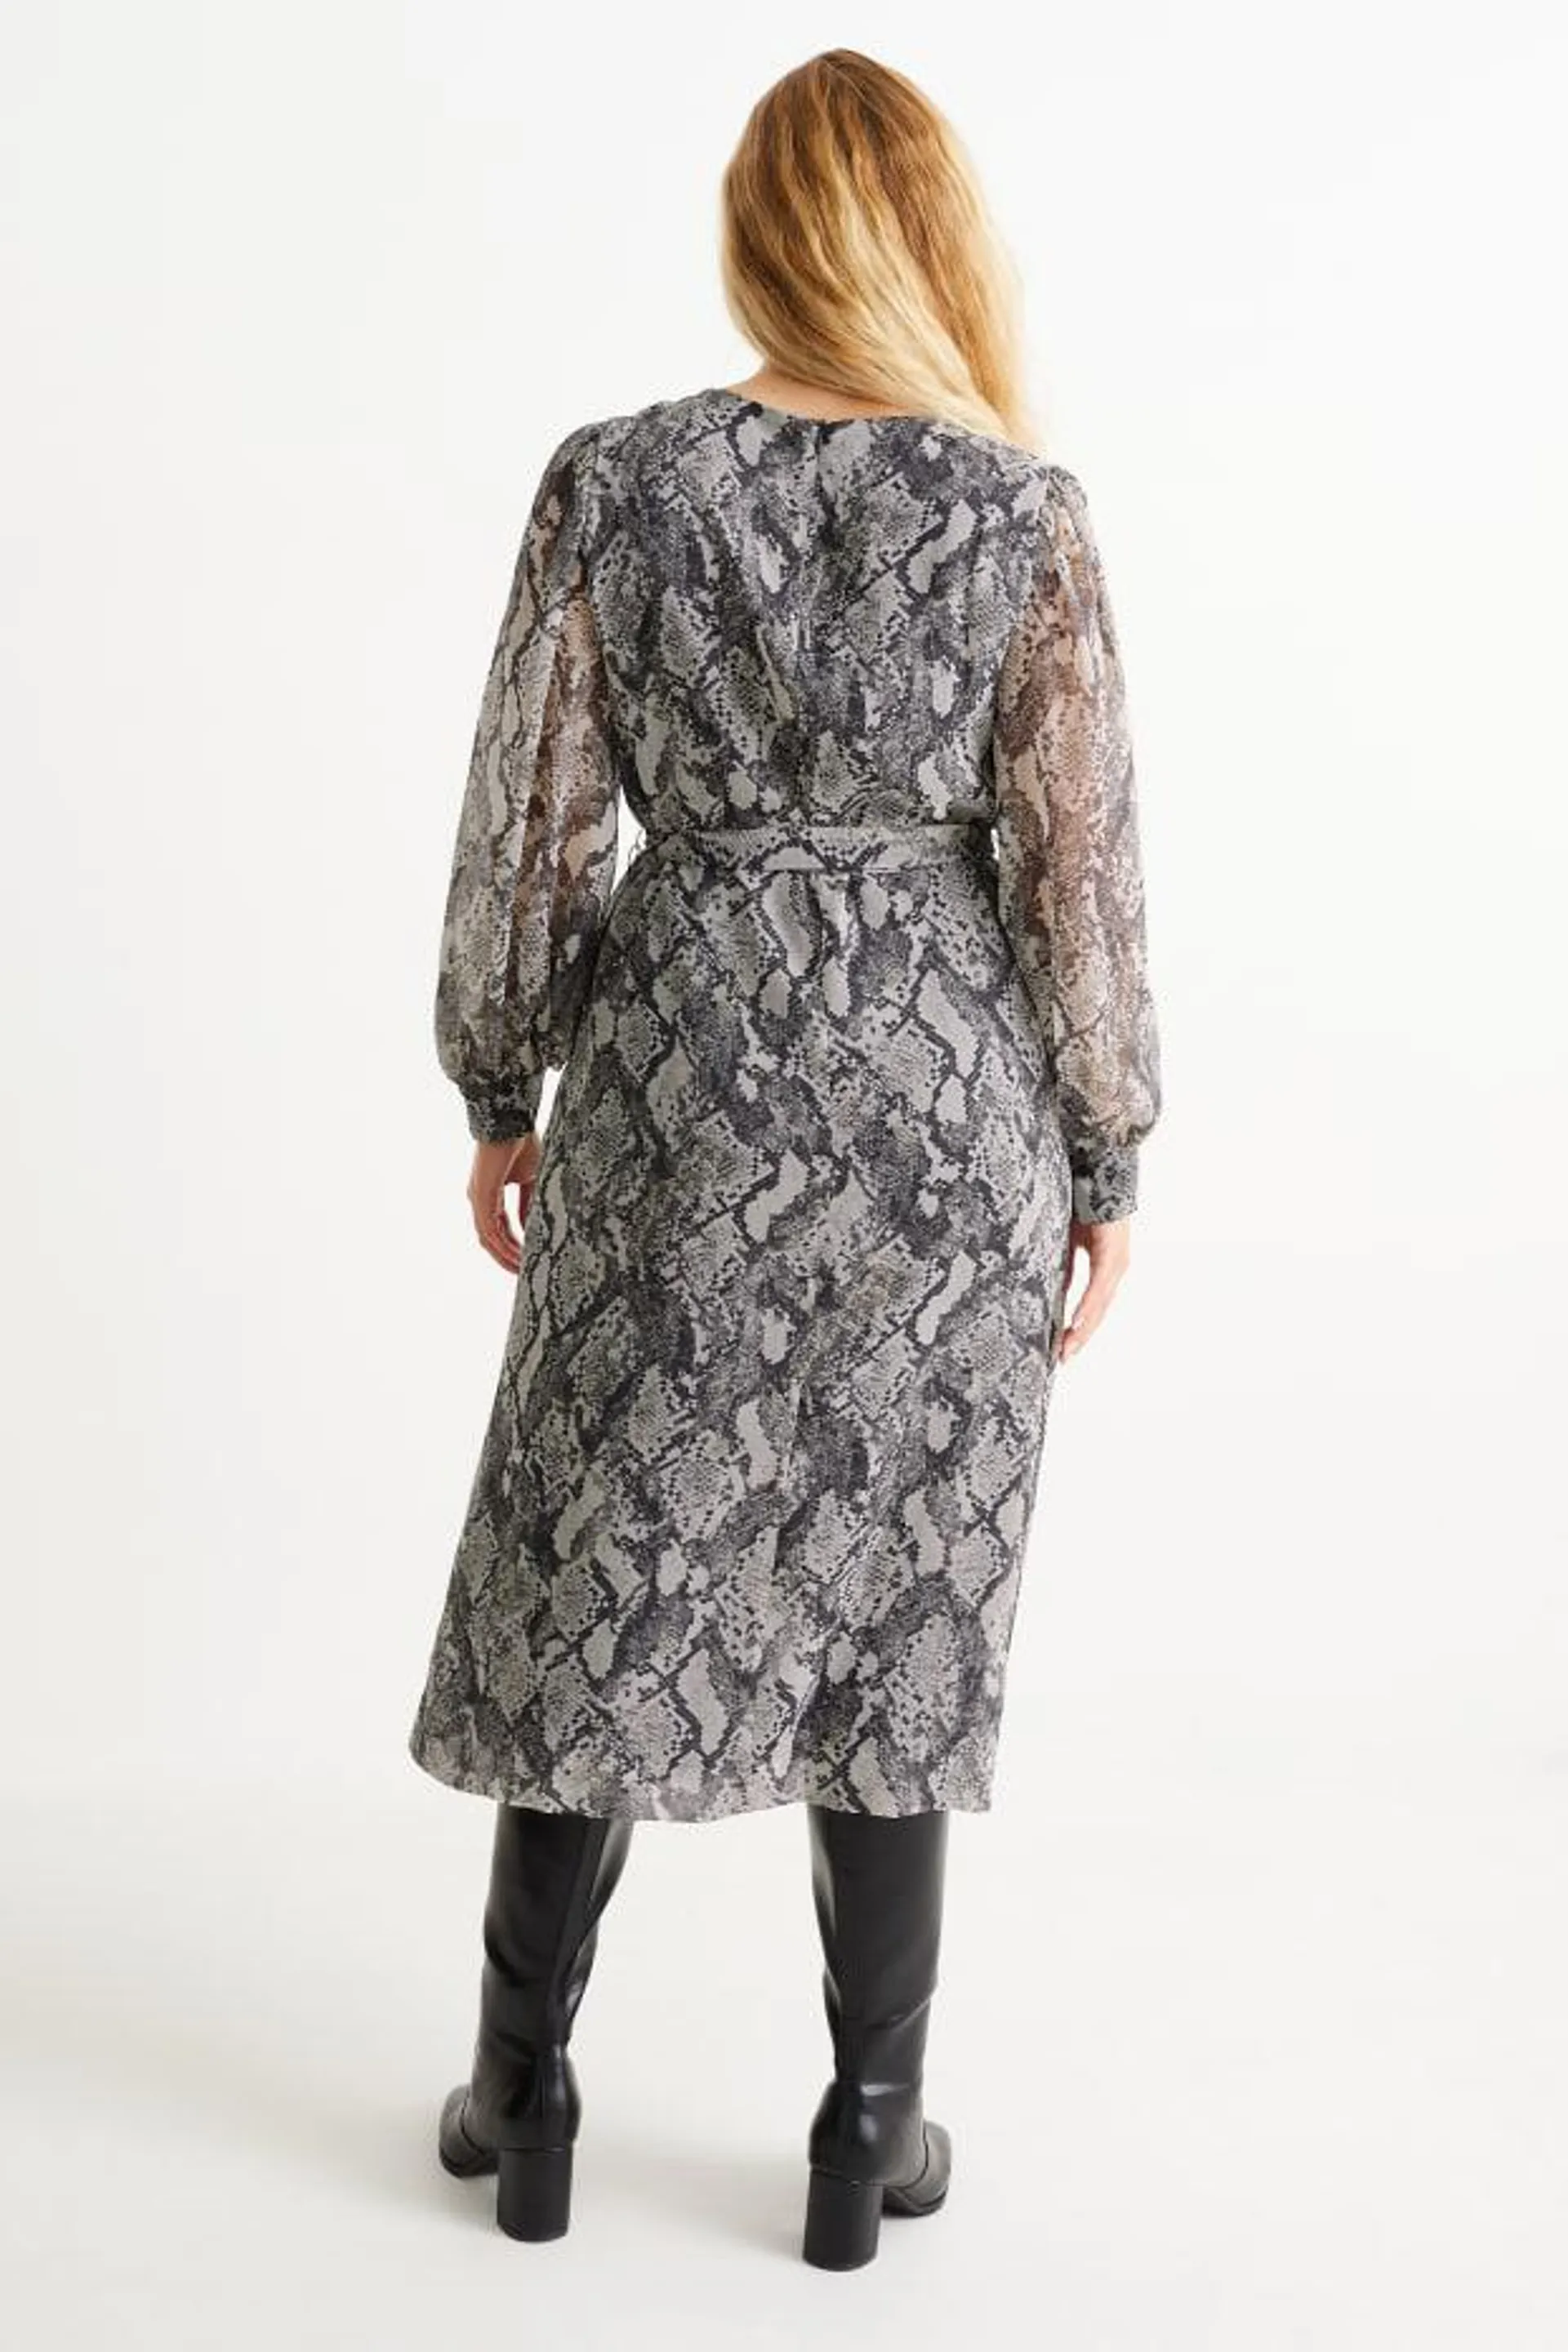 Chiffon dress - patterned